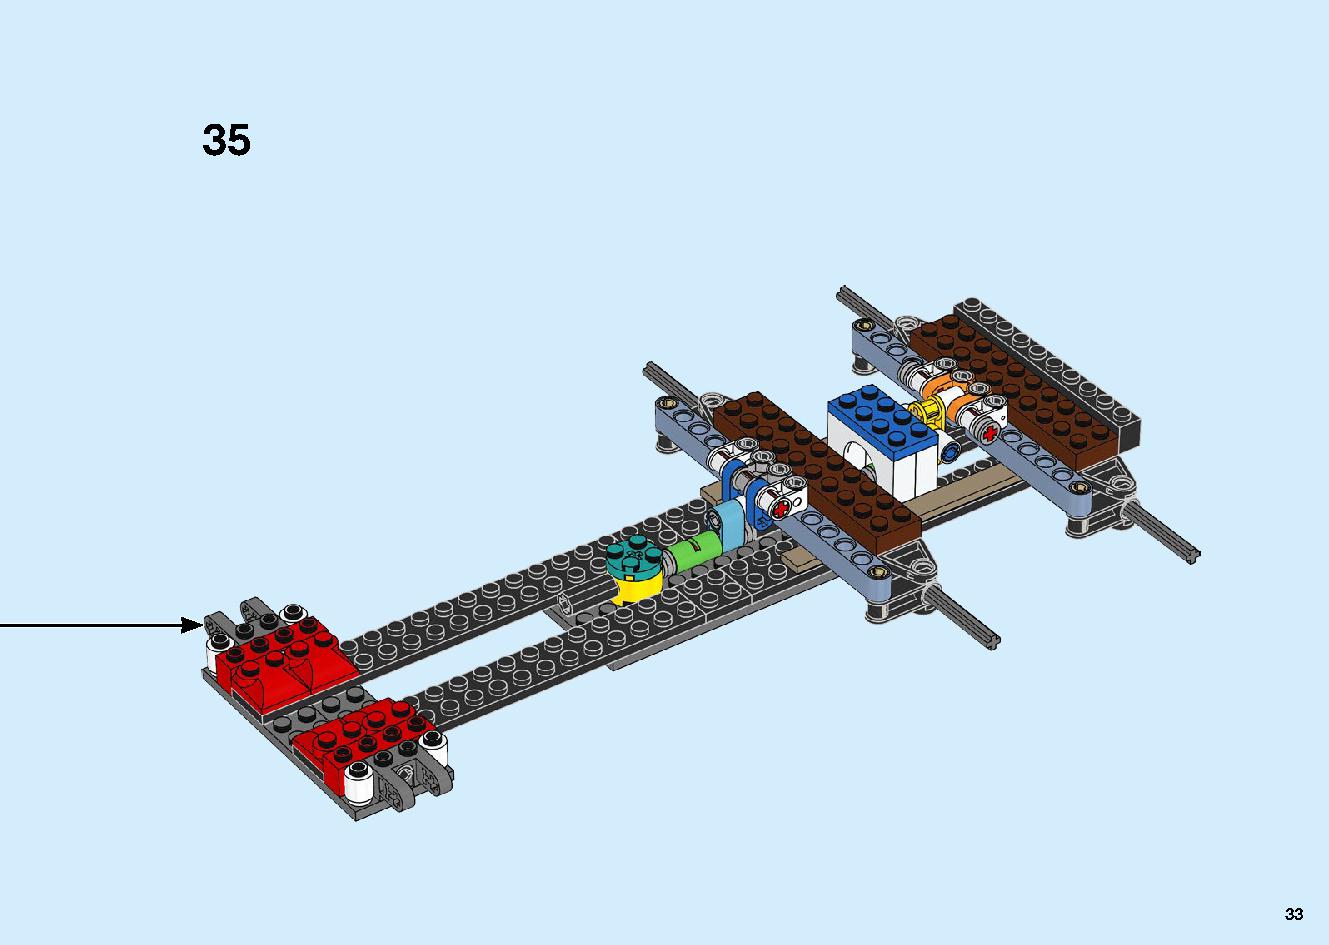 陸上戦艦バウンティ号 70677 レゴの商品情報 レゴの説明書・組立方法 33 page